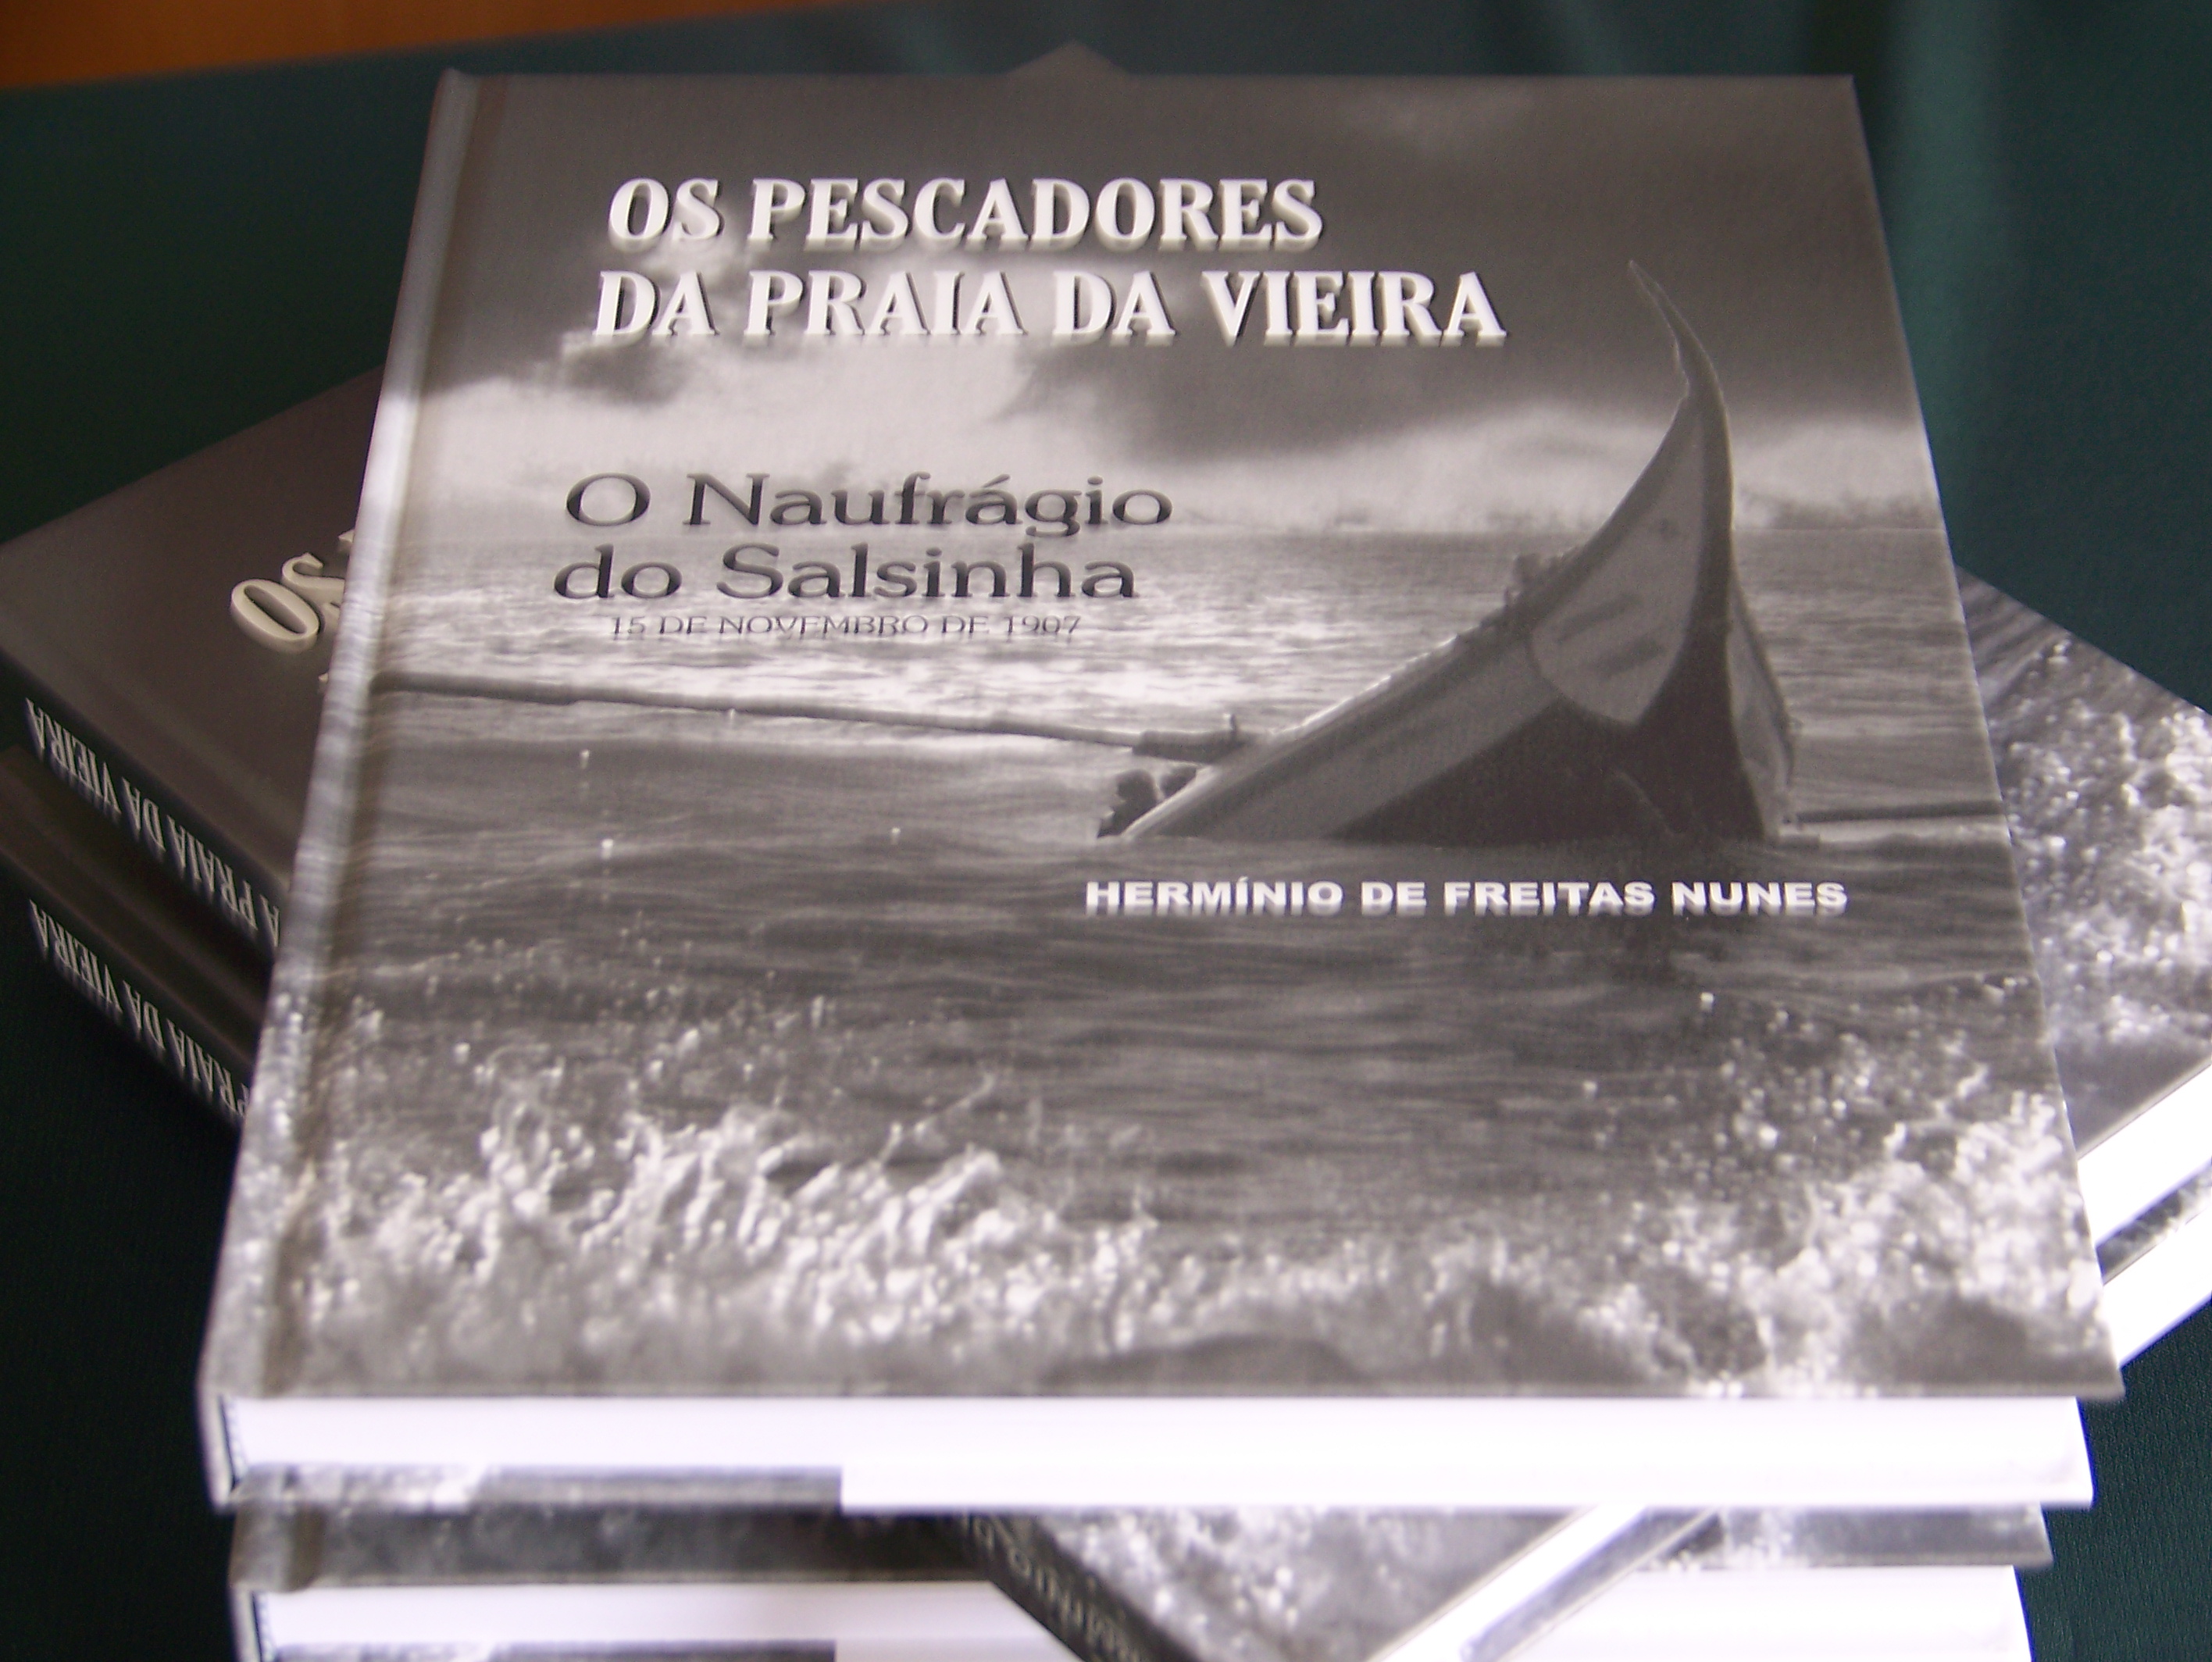 Os Pescadores da Praia da Vieira - O Naufrágio do Salsinha - Herminio de Freitas Nunes